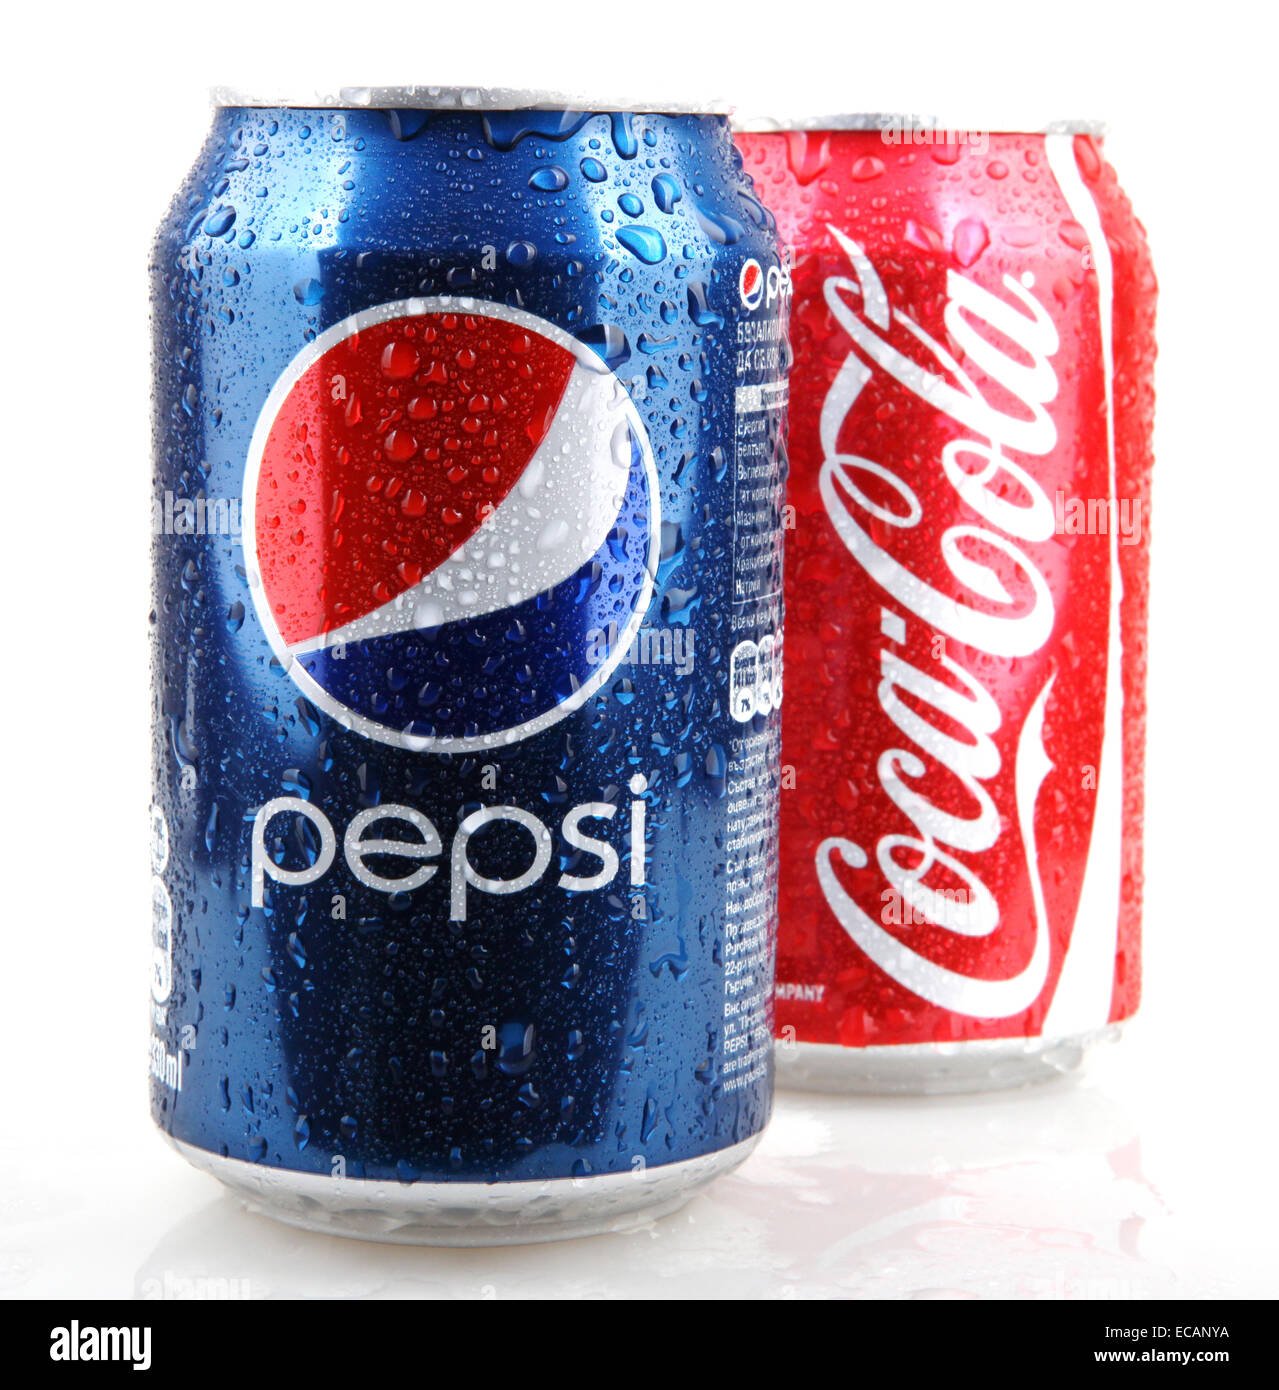 Mirinda Pepsi Coca Cola